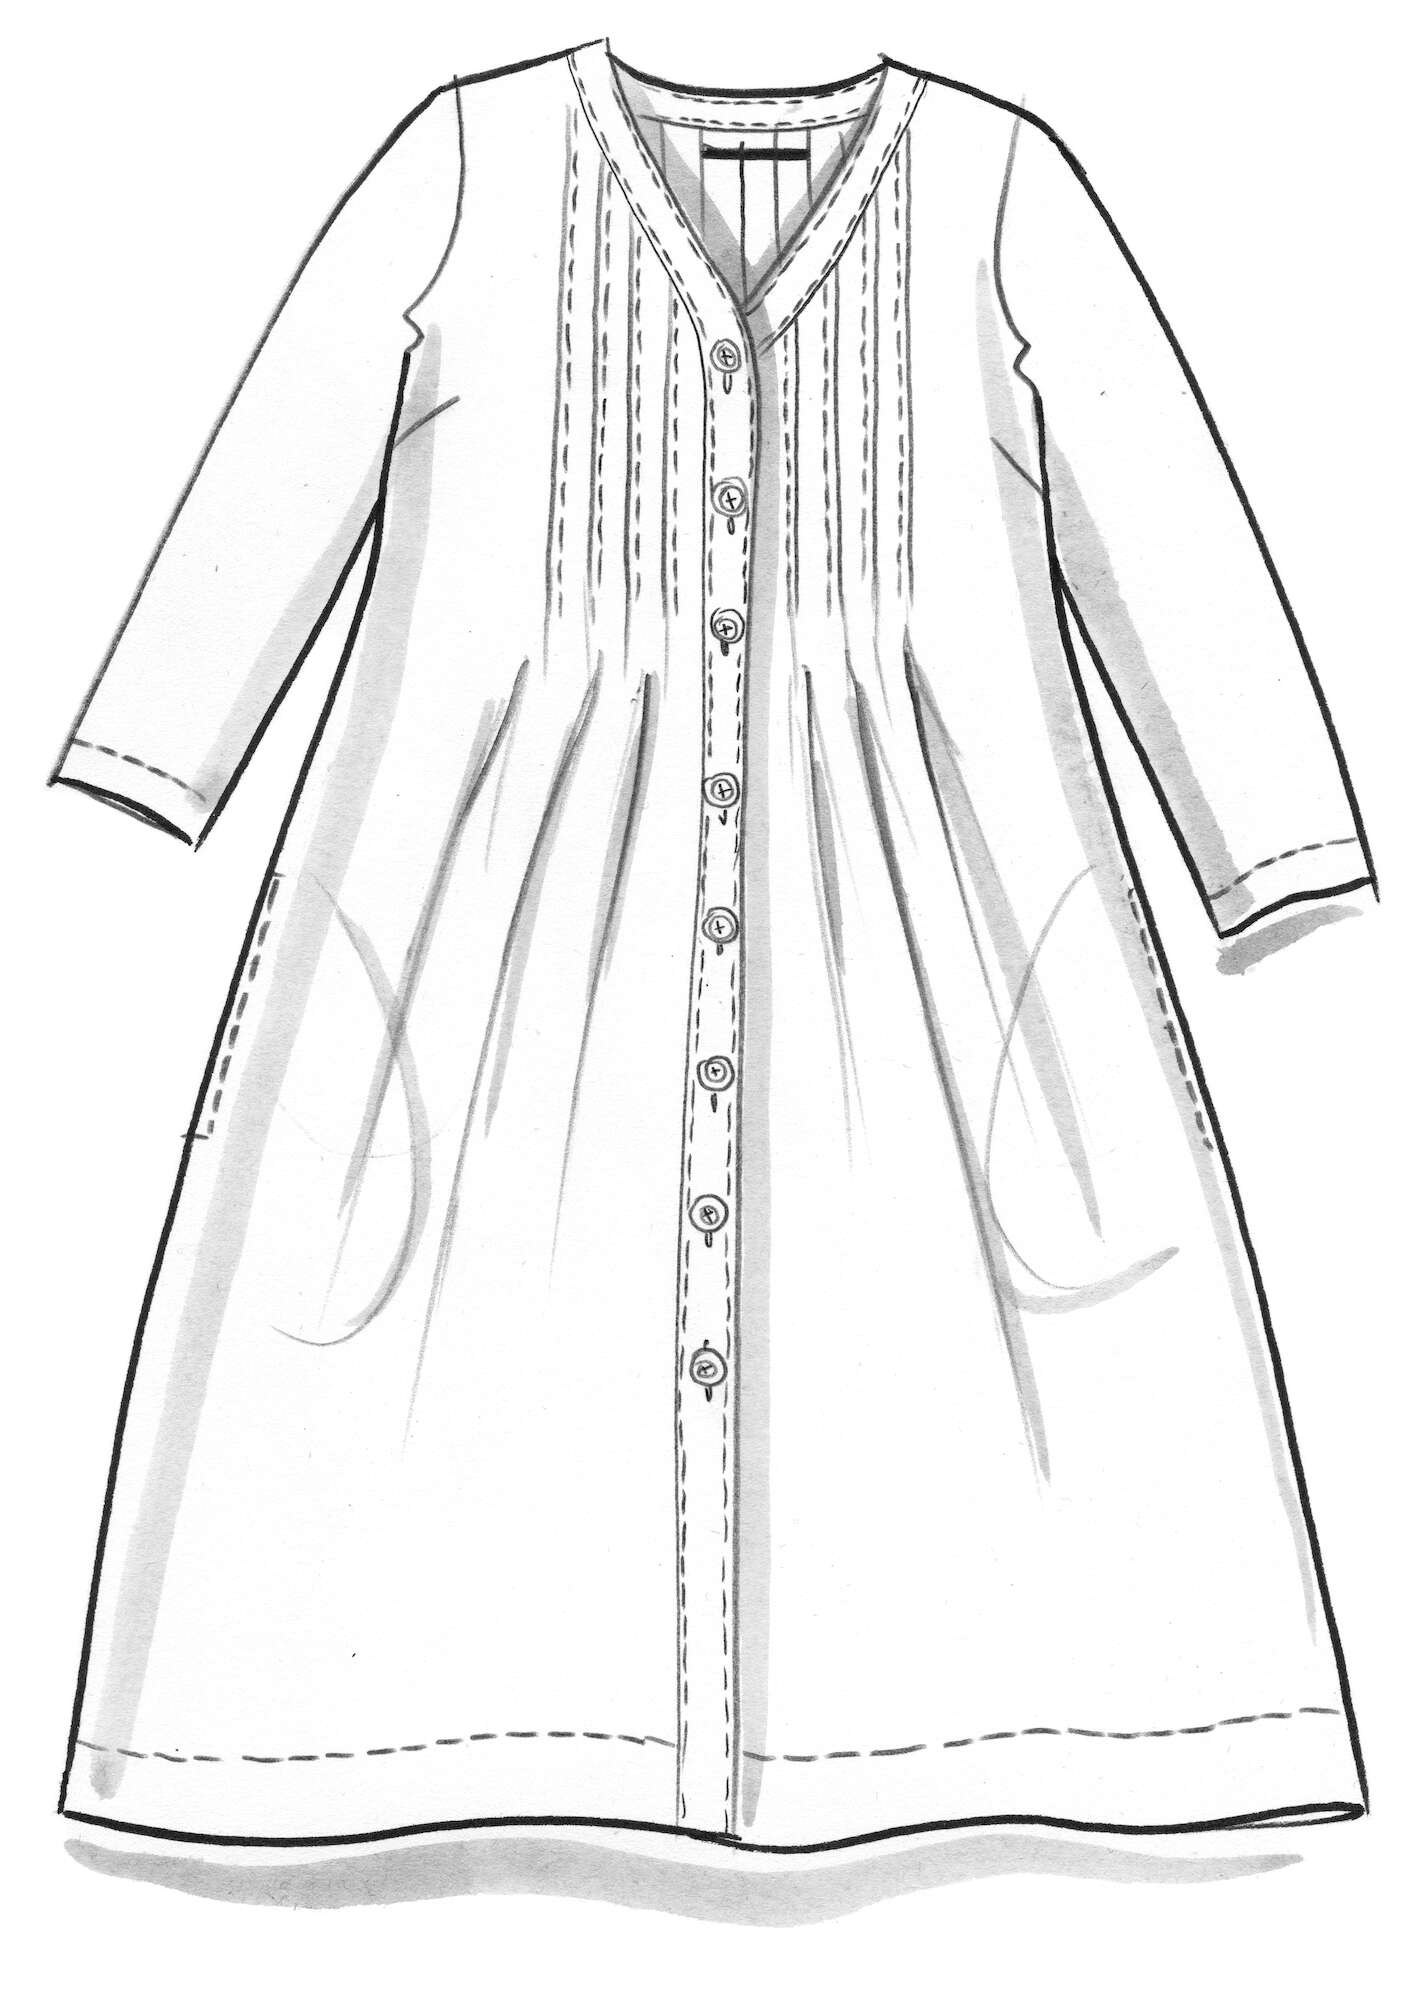 “Malören” woven linen dress